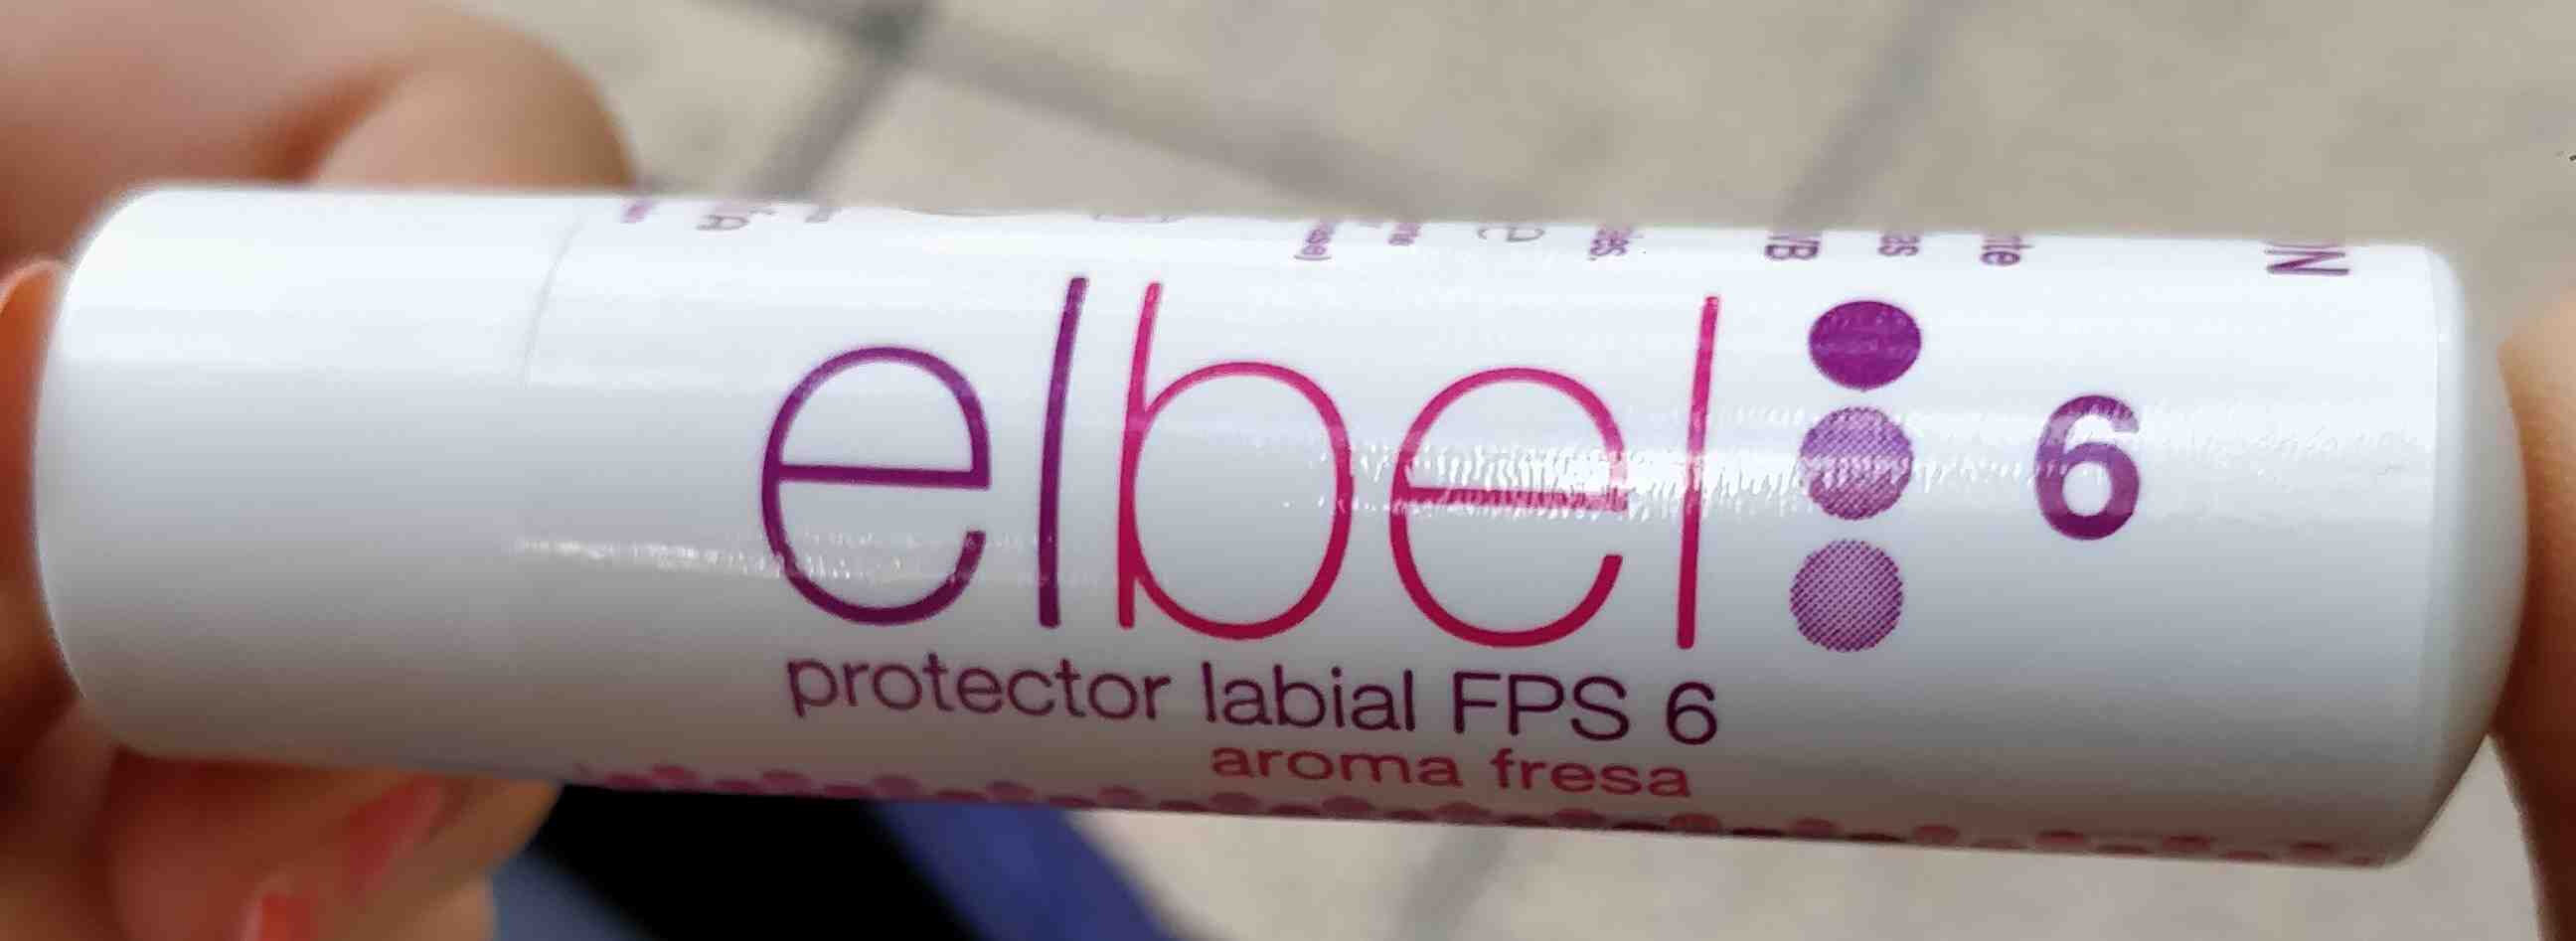 Protector labial FPS 6 aroma fresa - Produkt - en